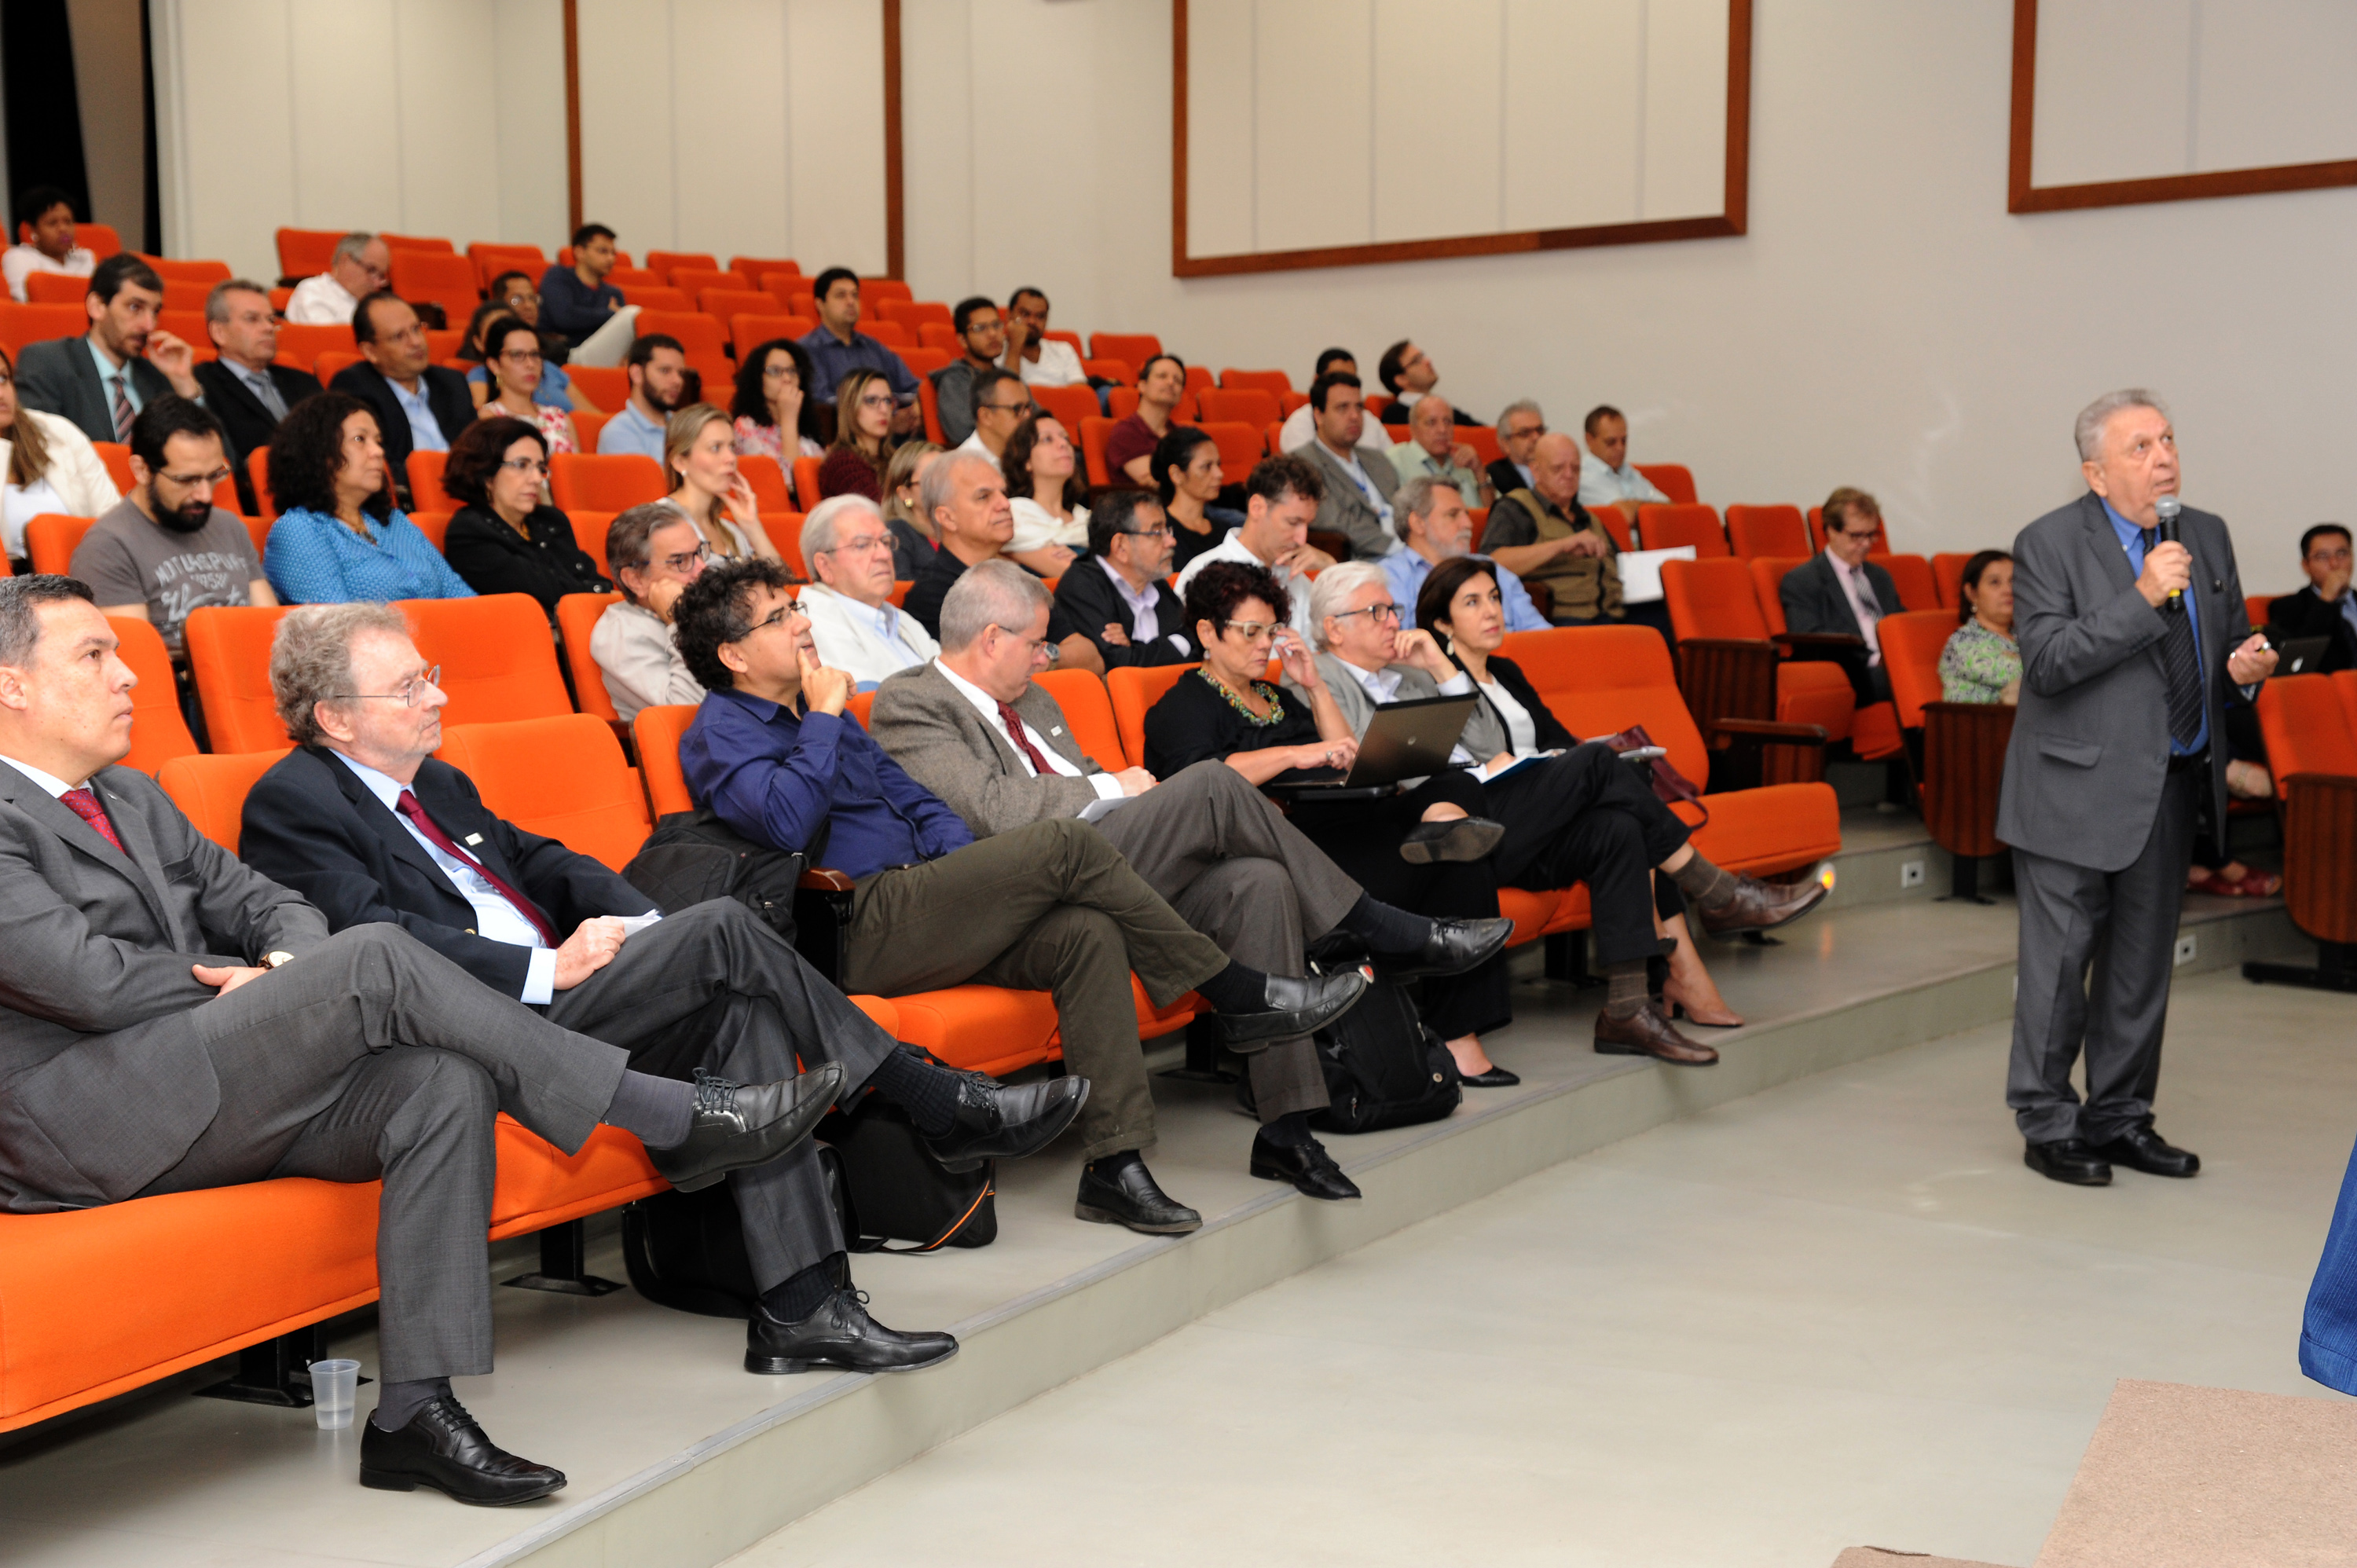 José Galizia Tundisi, em conferência nesta quarta-feira. Fotos: Carol Prado / UFMG